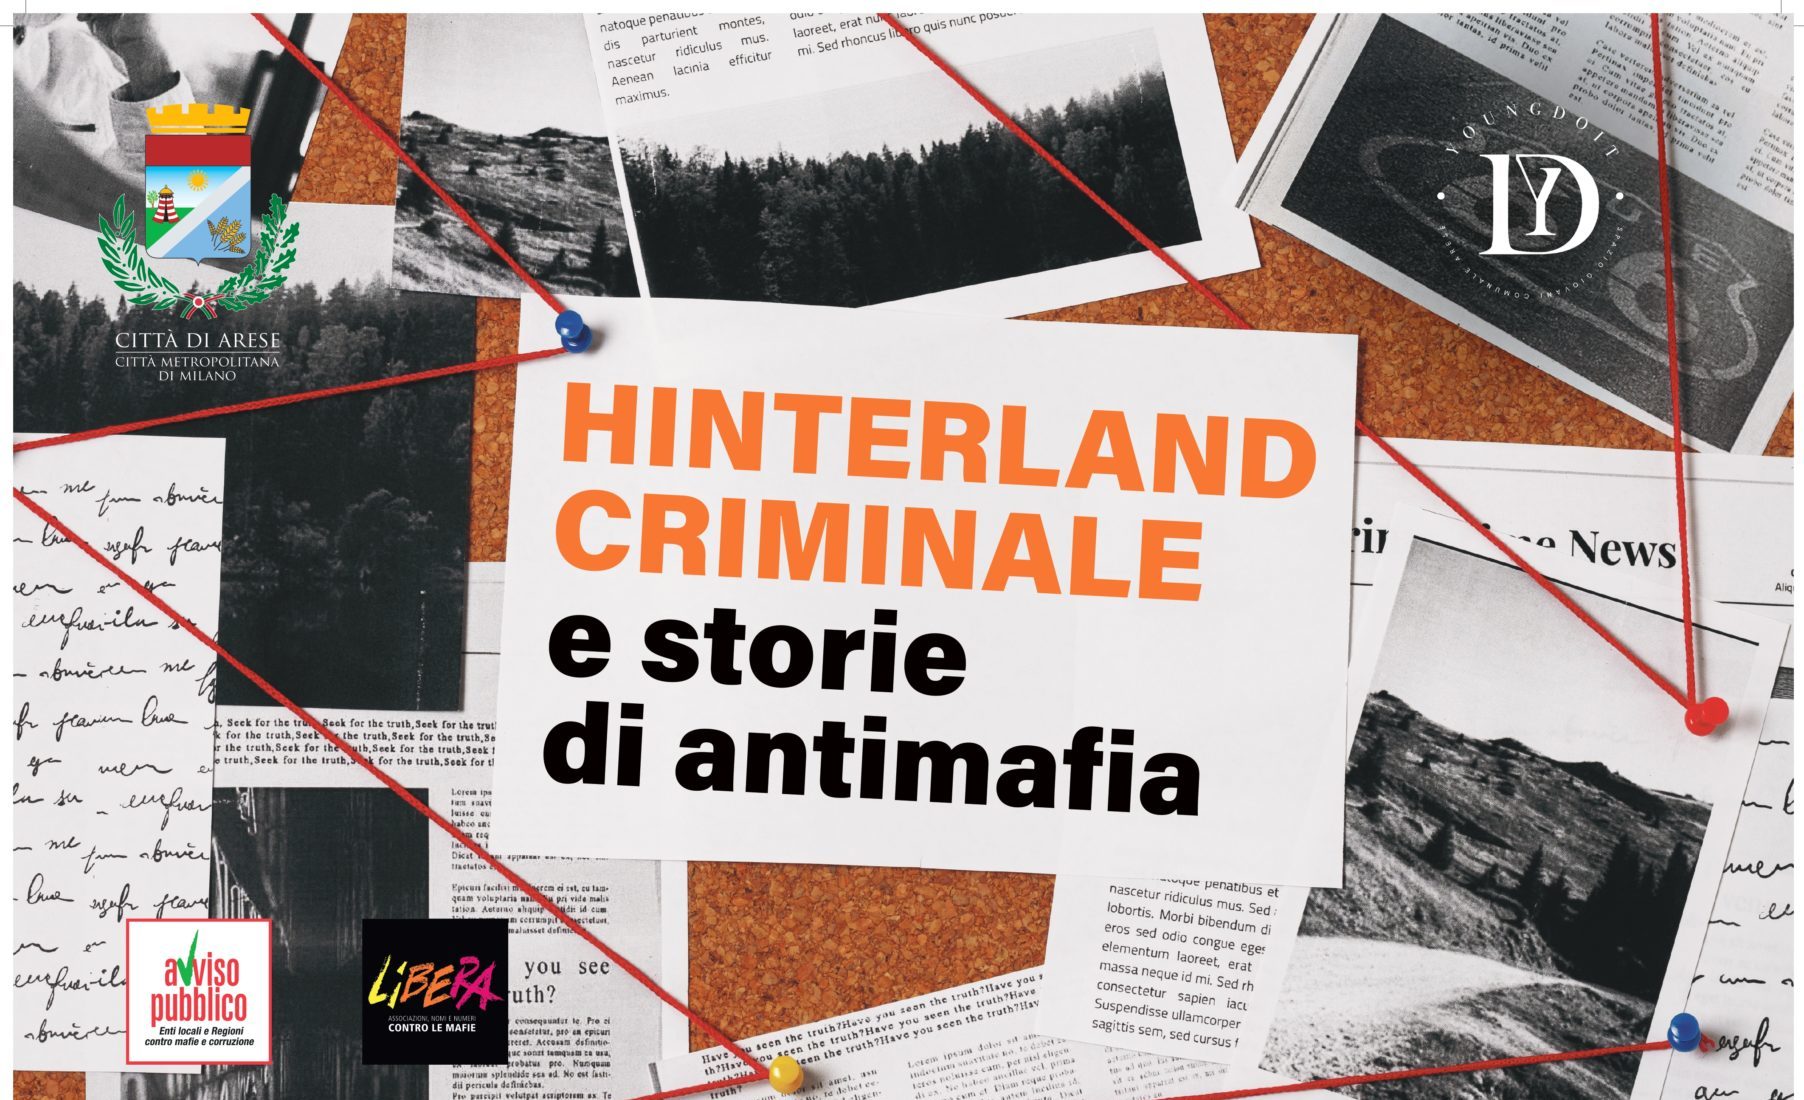 Hinterland criminale e storie antimafia – podcast